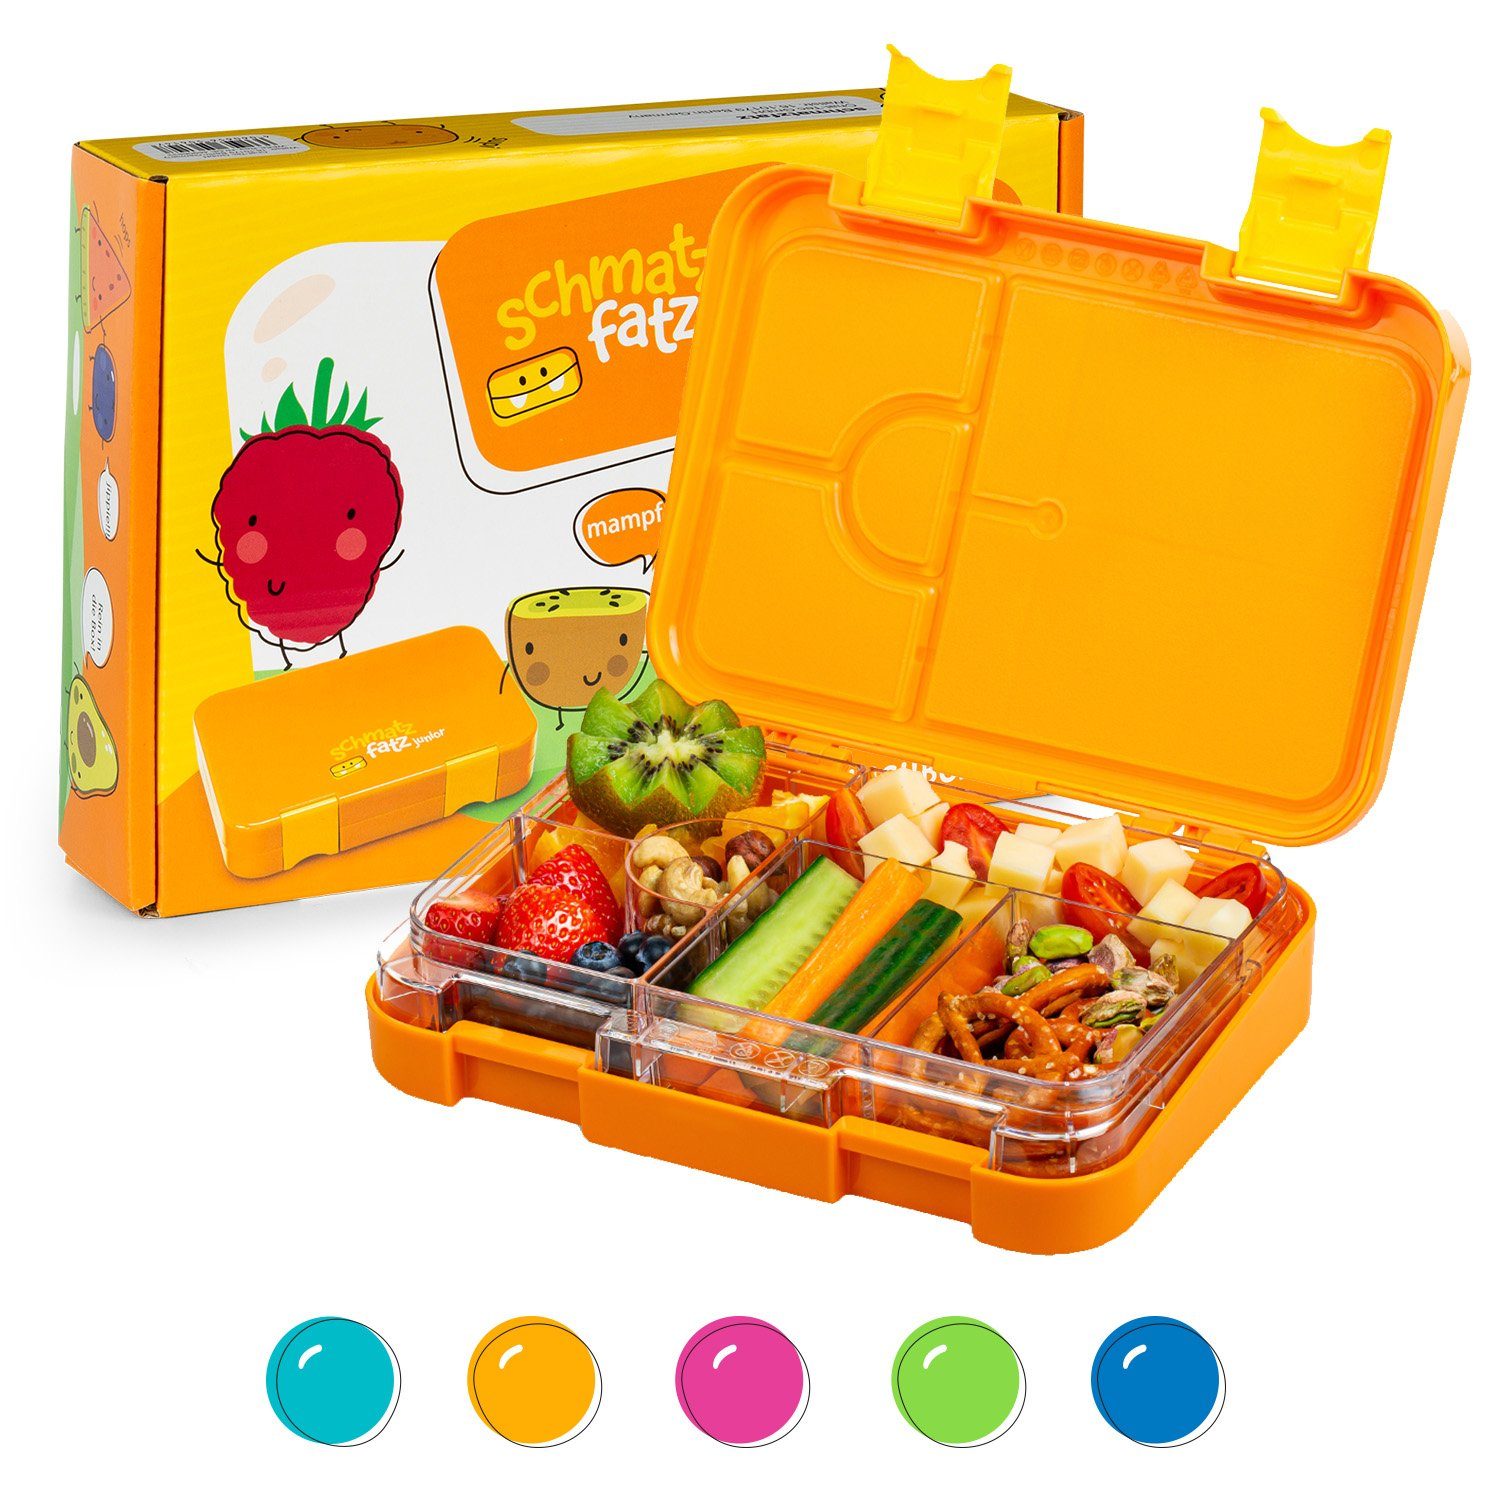 Klarstein Kunststoff, Orange schmatzfatz junior Frischhaltedose Lunchbox, (Packung)